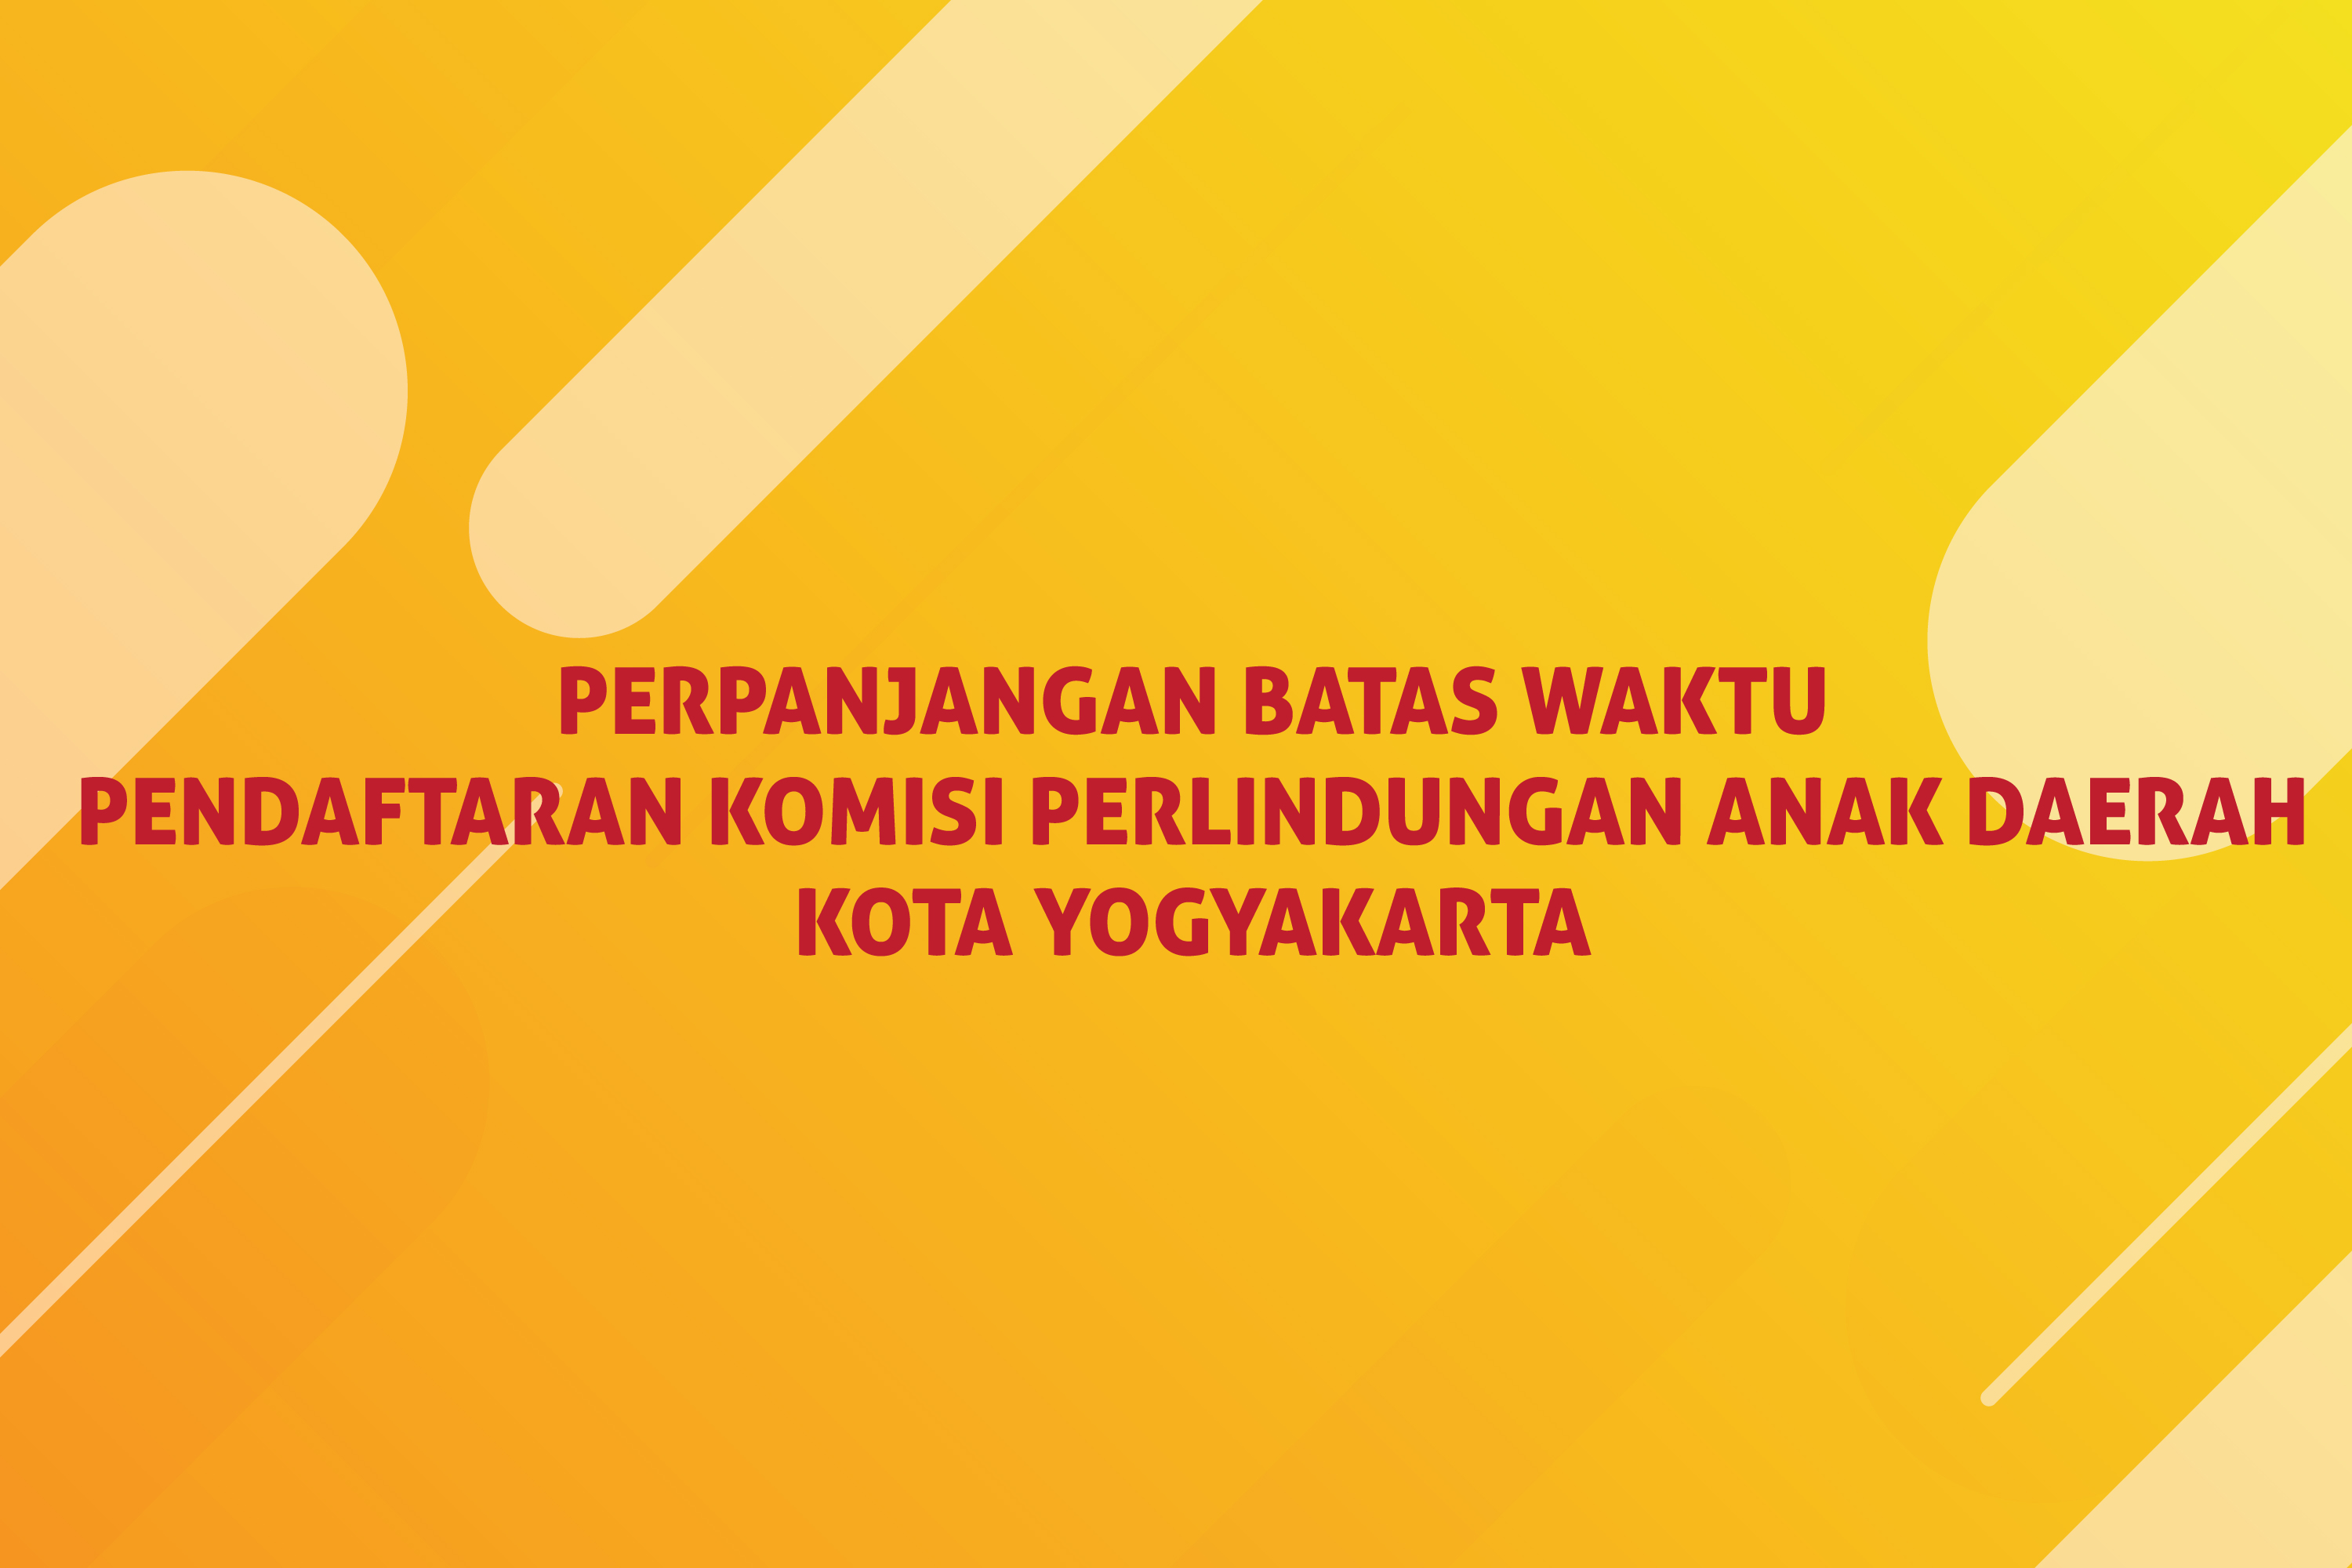 Perpanjangan Pendaftaran Calon Anggota KPAD Kota Yogyakarta